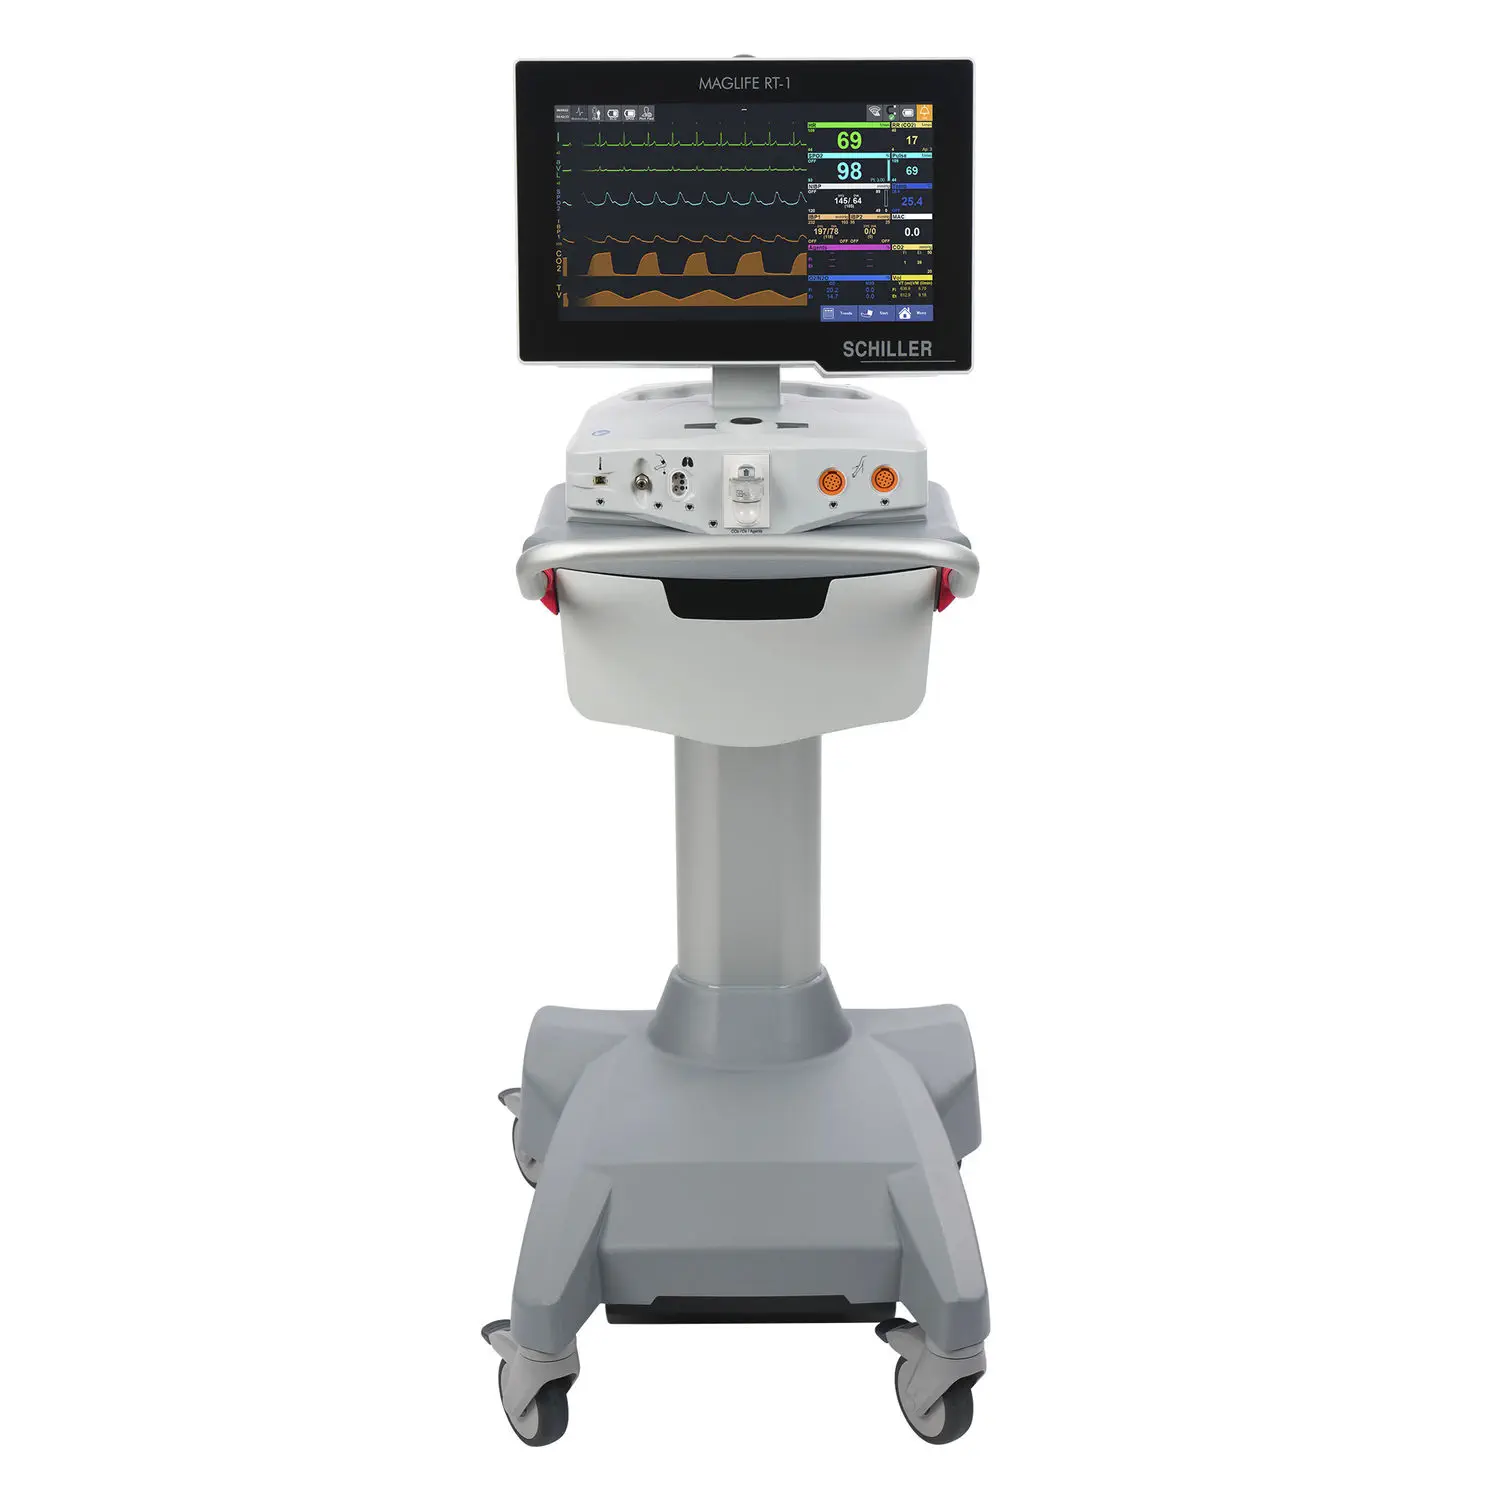 เครื่องติดตามการทำงานของหัวใจและสัญญาณชีพอัตโนมัติสำหรับห้อง MRI  MRI-compatible patient monitor MAGLIFE RT-1  SCHILLER